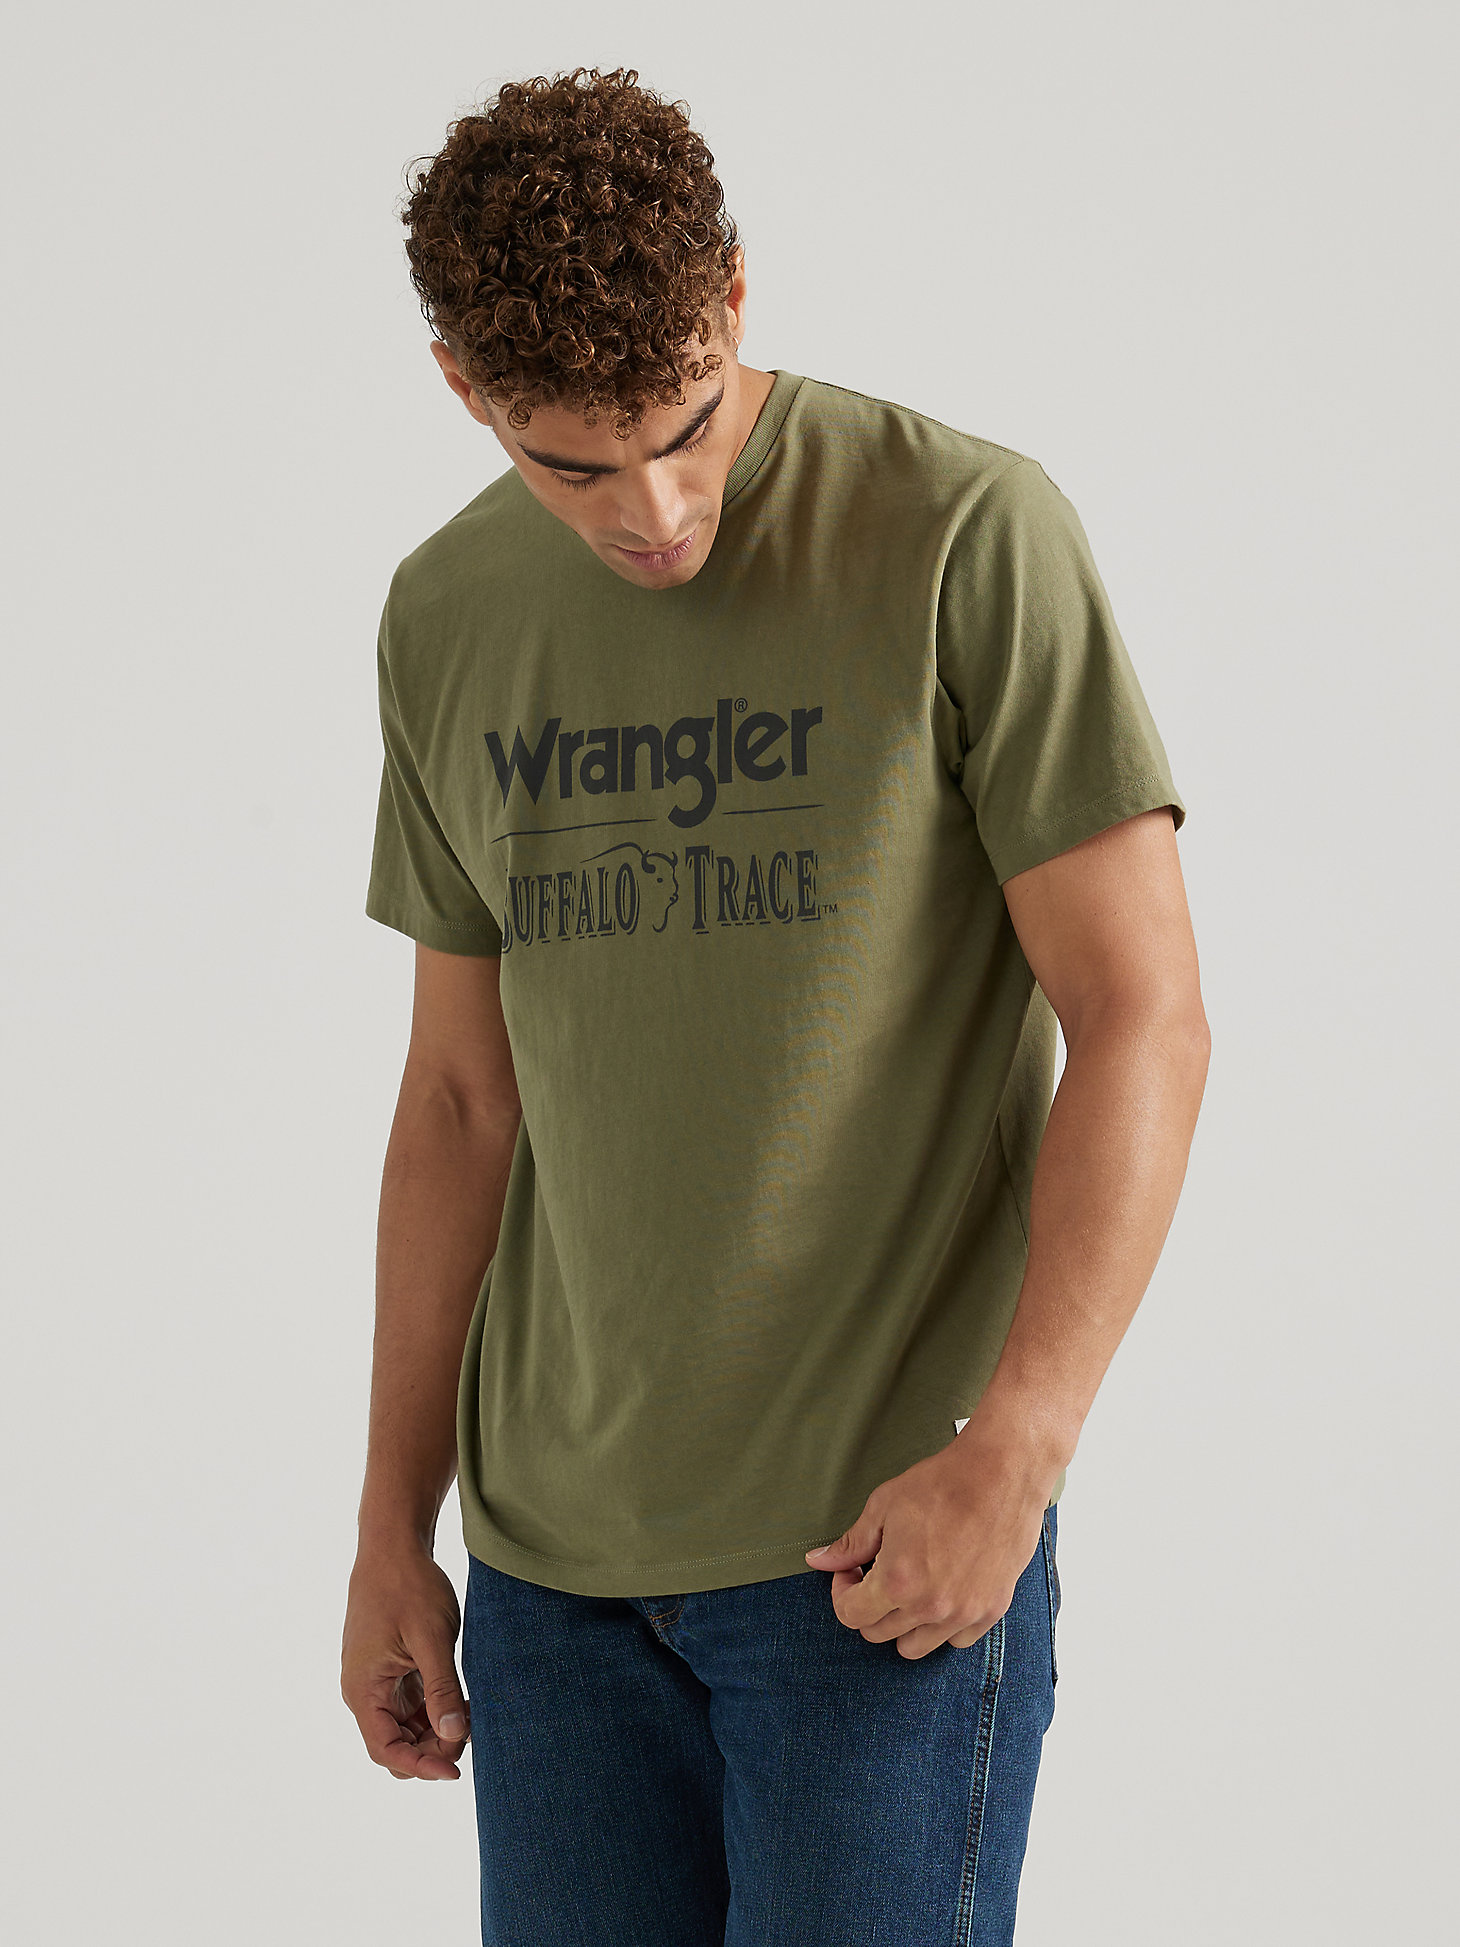 Wrangler x Buffalo Trace™ Men's Logo T-Shirt in Kentucky Green main view